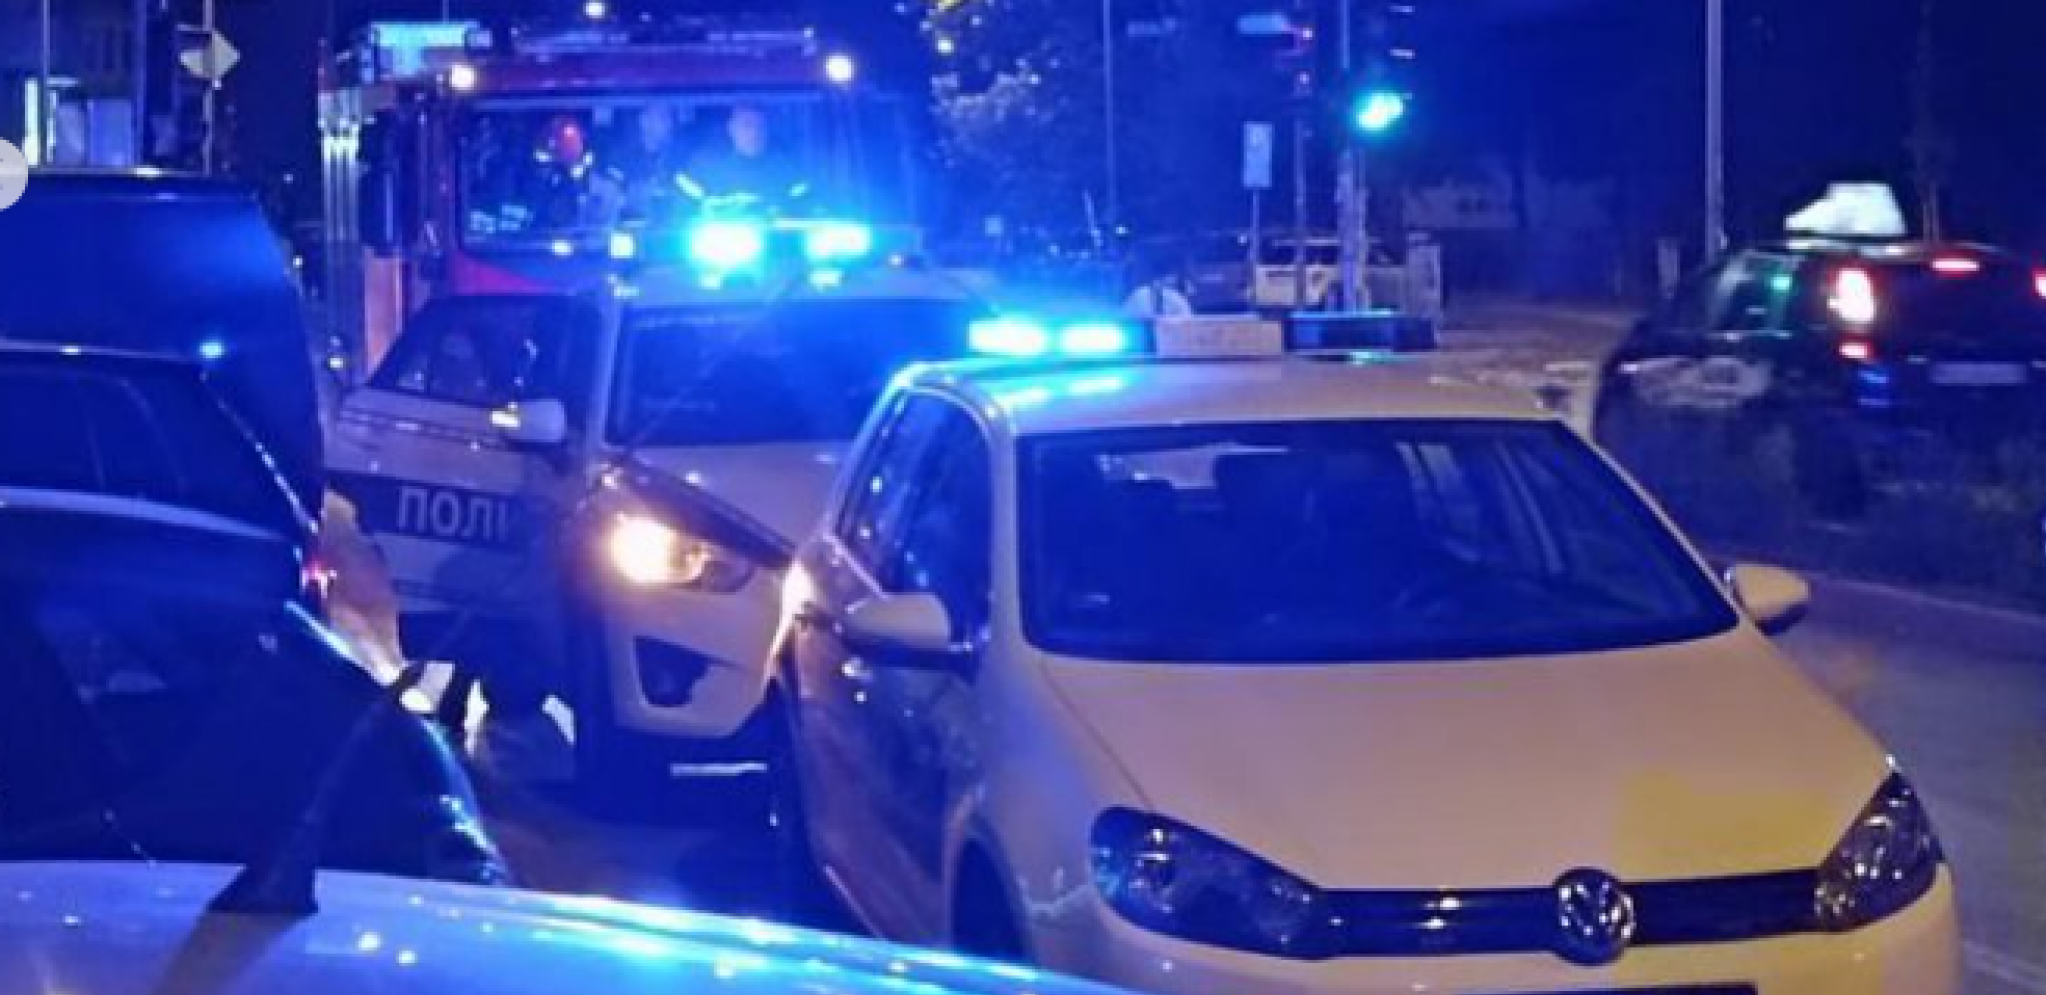 PALA GRUPA TINEJDŽERA OSUMNJIČENJA ZA KRAĐU KOLA Policija u Smederevu uhapsila najstrijeg člana